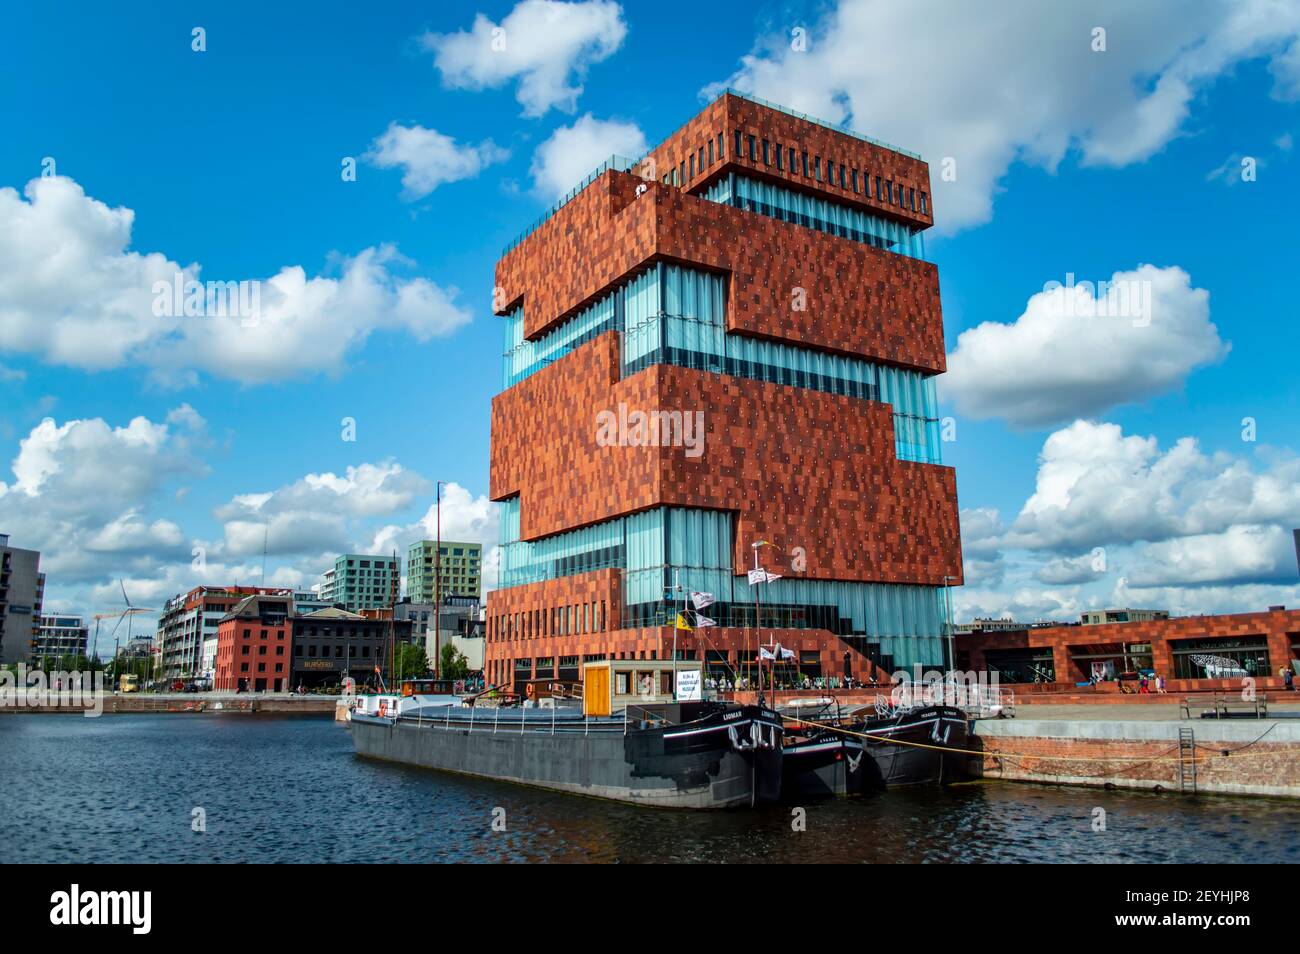 Antwerpen, Belgien - 12. Juli 2019: Museum aan de Stroom ("Museum am Fluss"), das größte Museum in Antwerpen, Belgien Stockfoto